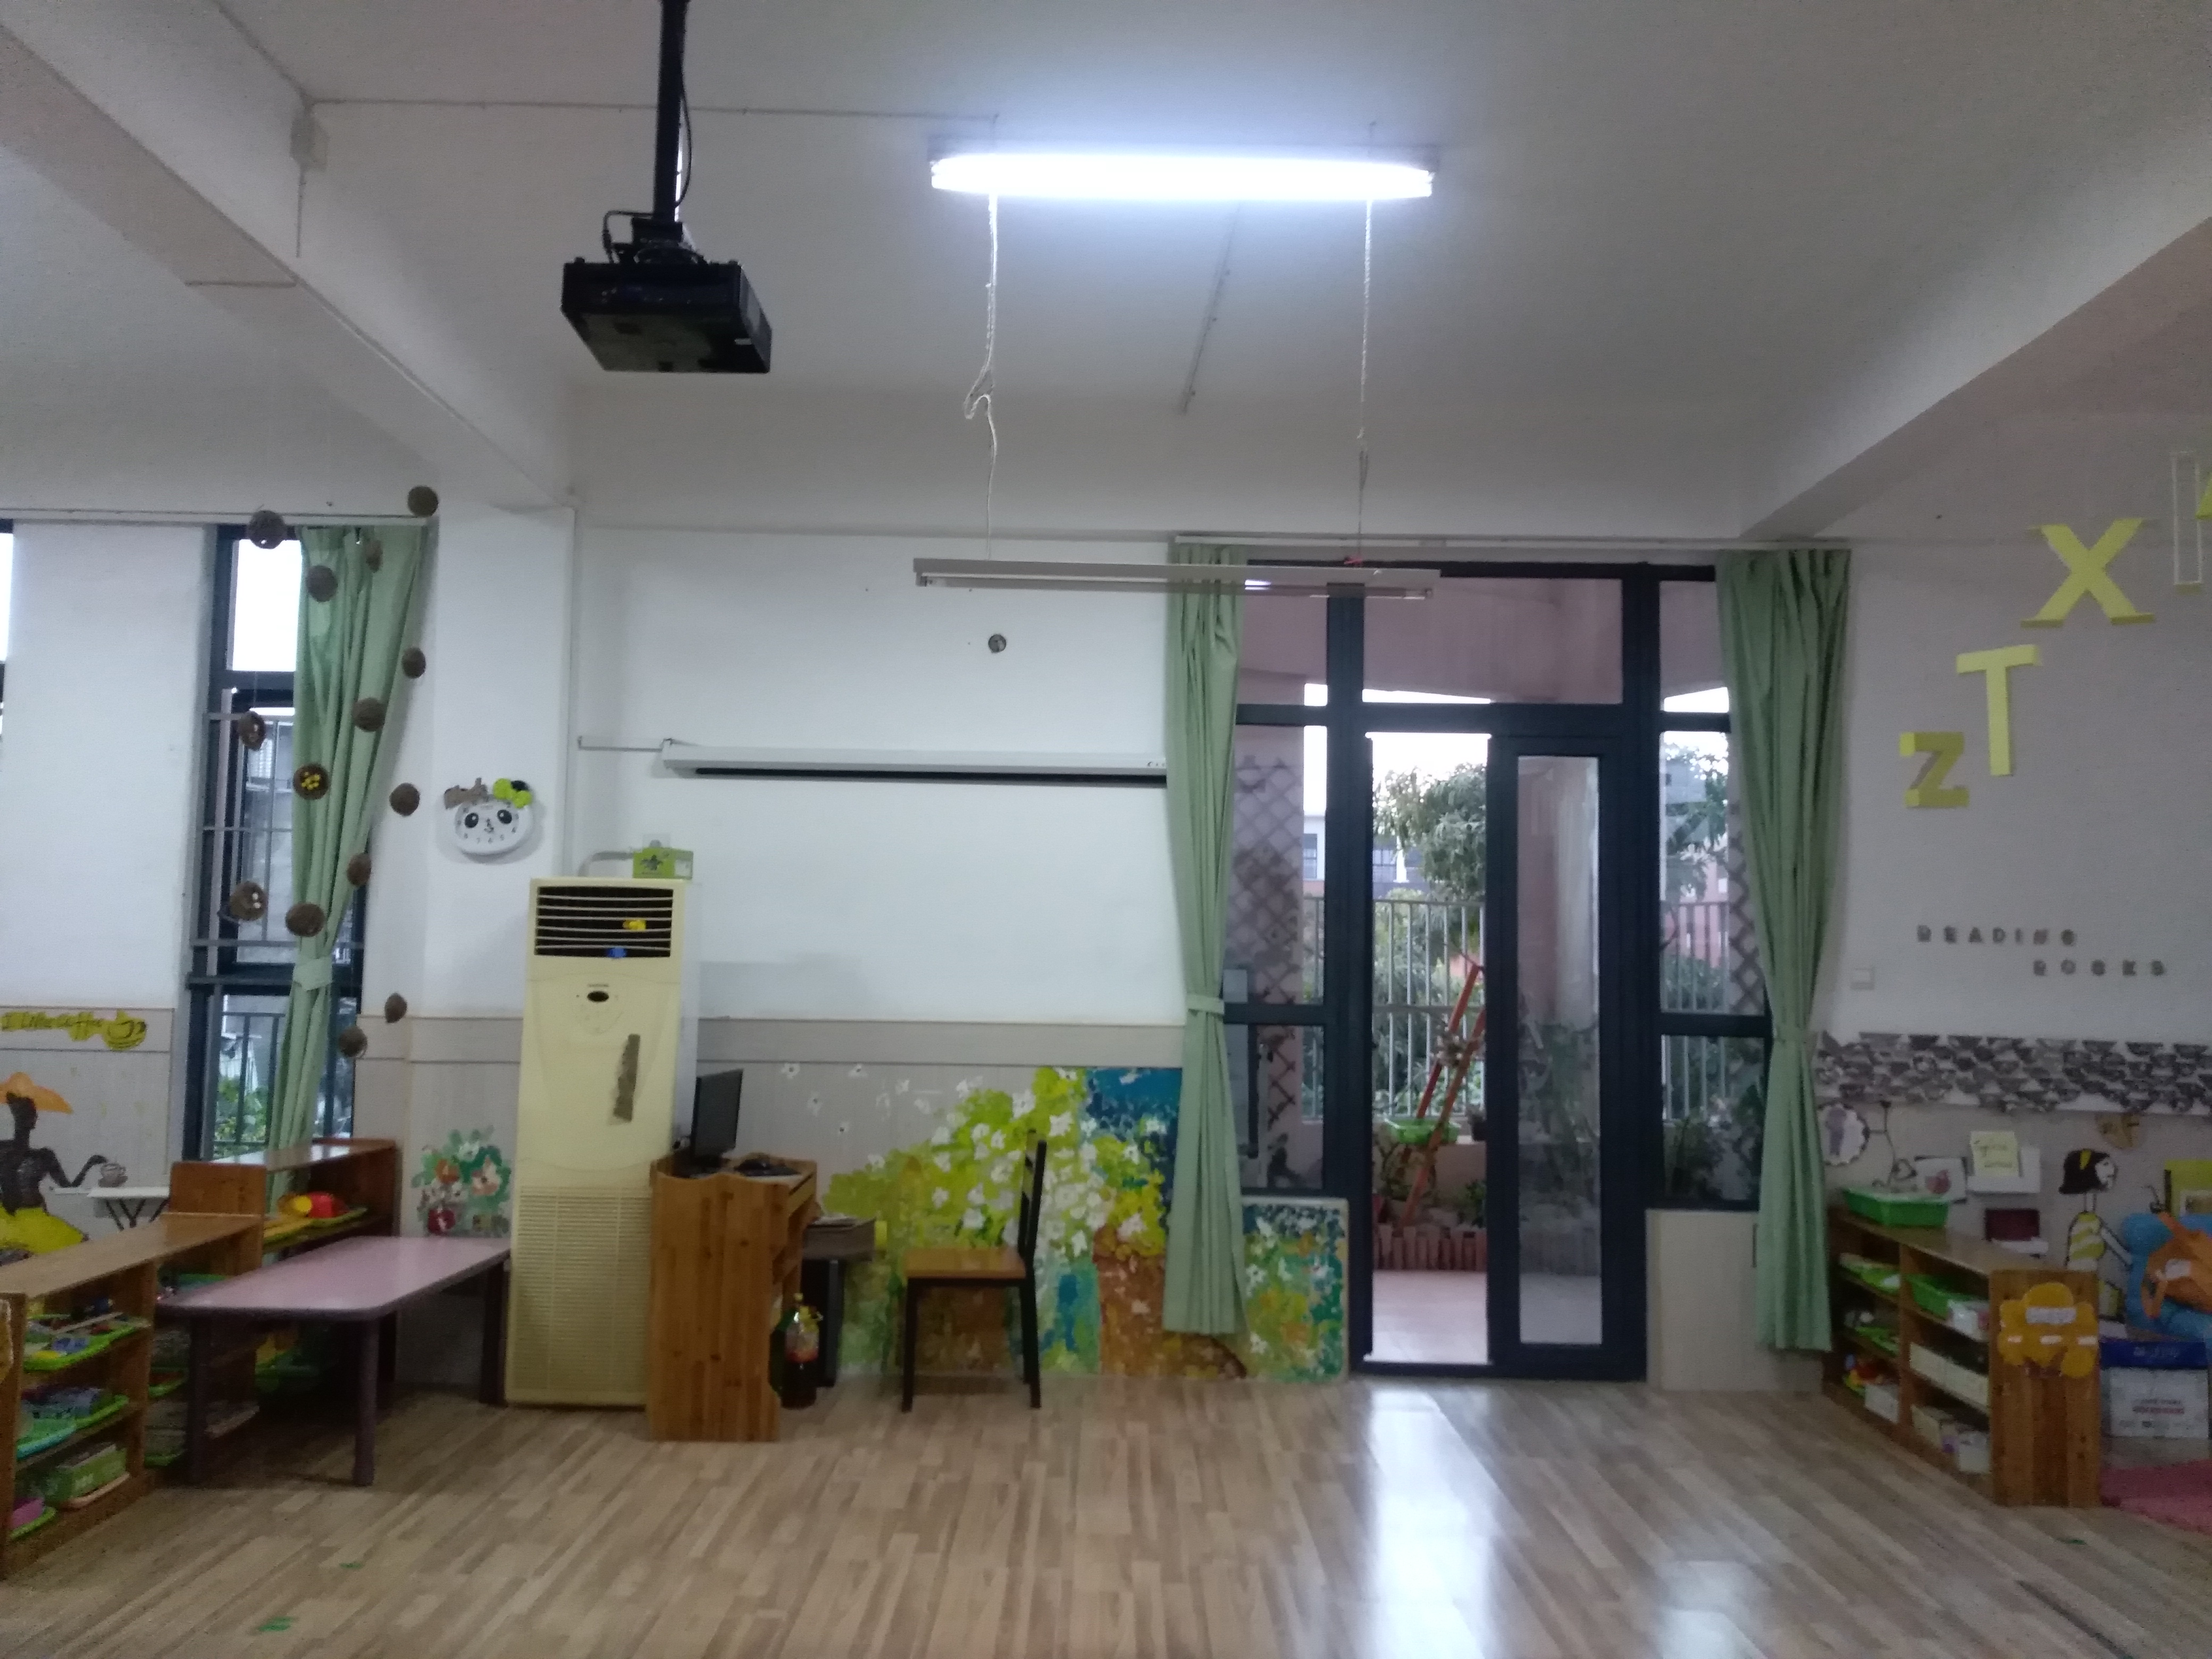  深圳最专业的幼儿园装修公司